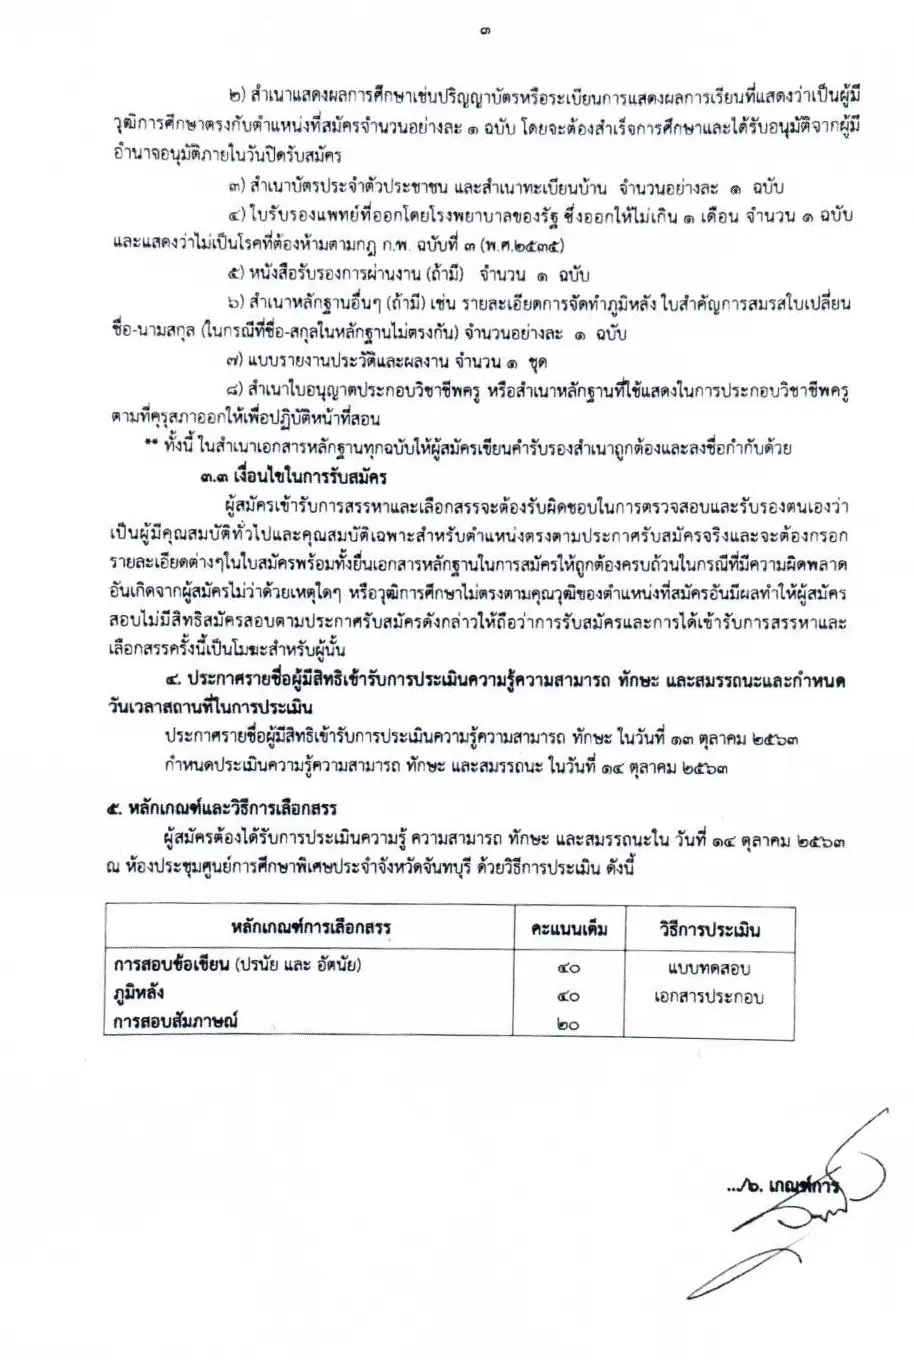 ศูนย์การศึกษาพิเศษ จังหวัดจันทบุรี รับสมัครพนักงานราชการครู 8 อัตรา สมัคร 6-12 ตุลาคม 2563 